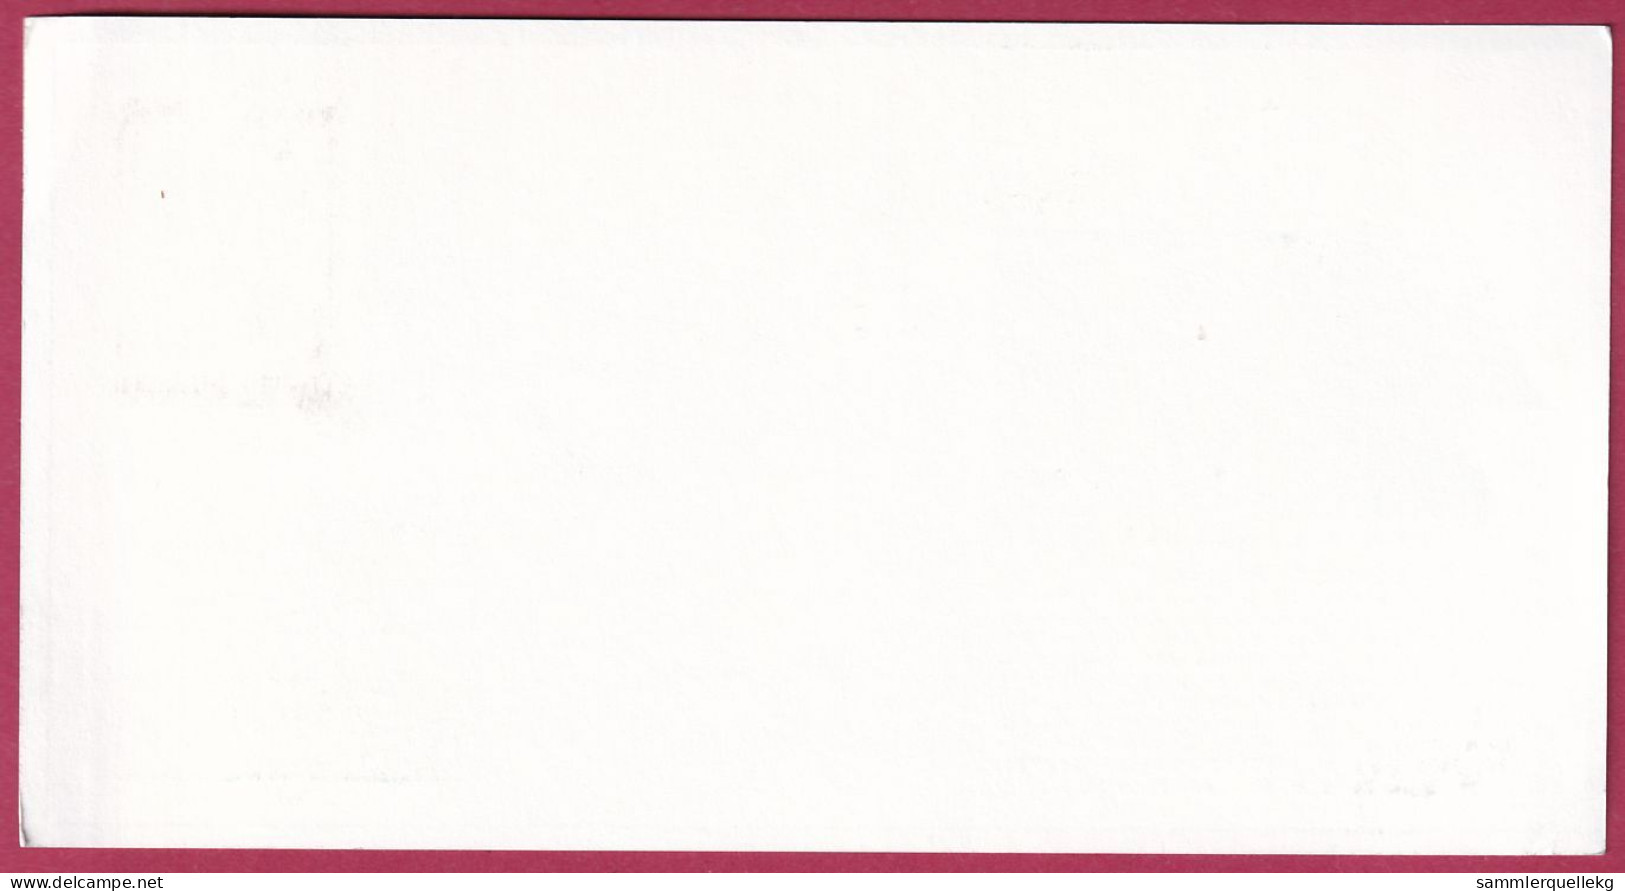 Österreich MNr.1911 Sonderstempel Gmünd 5. 3. 1988, 10 Jahre 1. Kosmisches Postamt - Europe